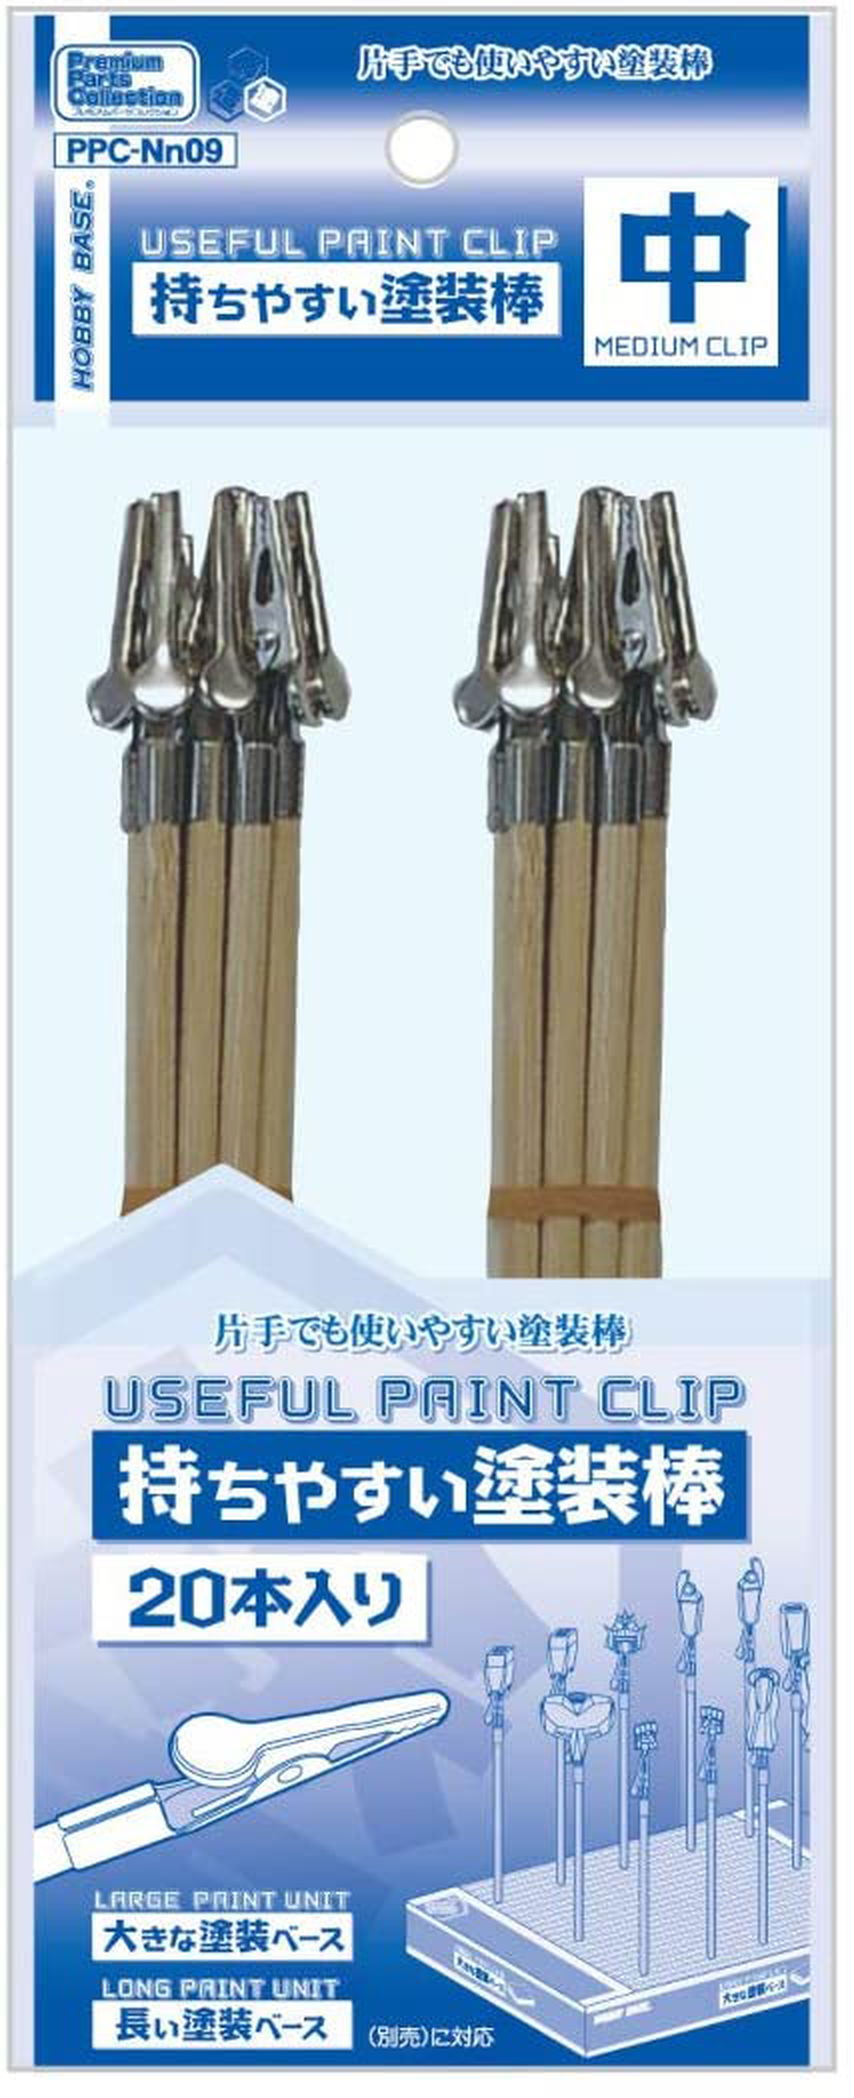 Hobby Base PPC-Nn09 Useful Paint Clip (Medium Clip) (20 Pieces) - BanzaiHobby